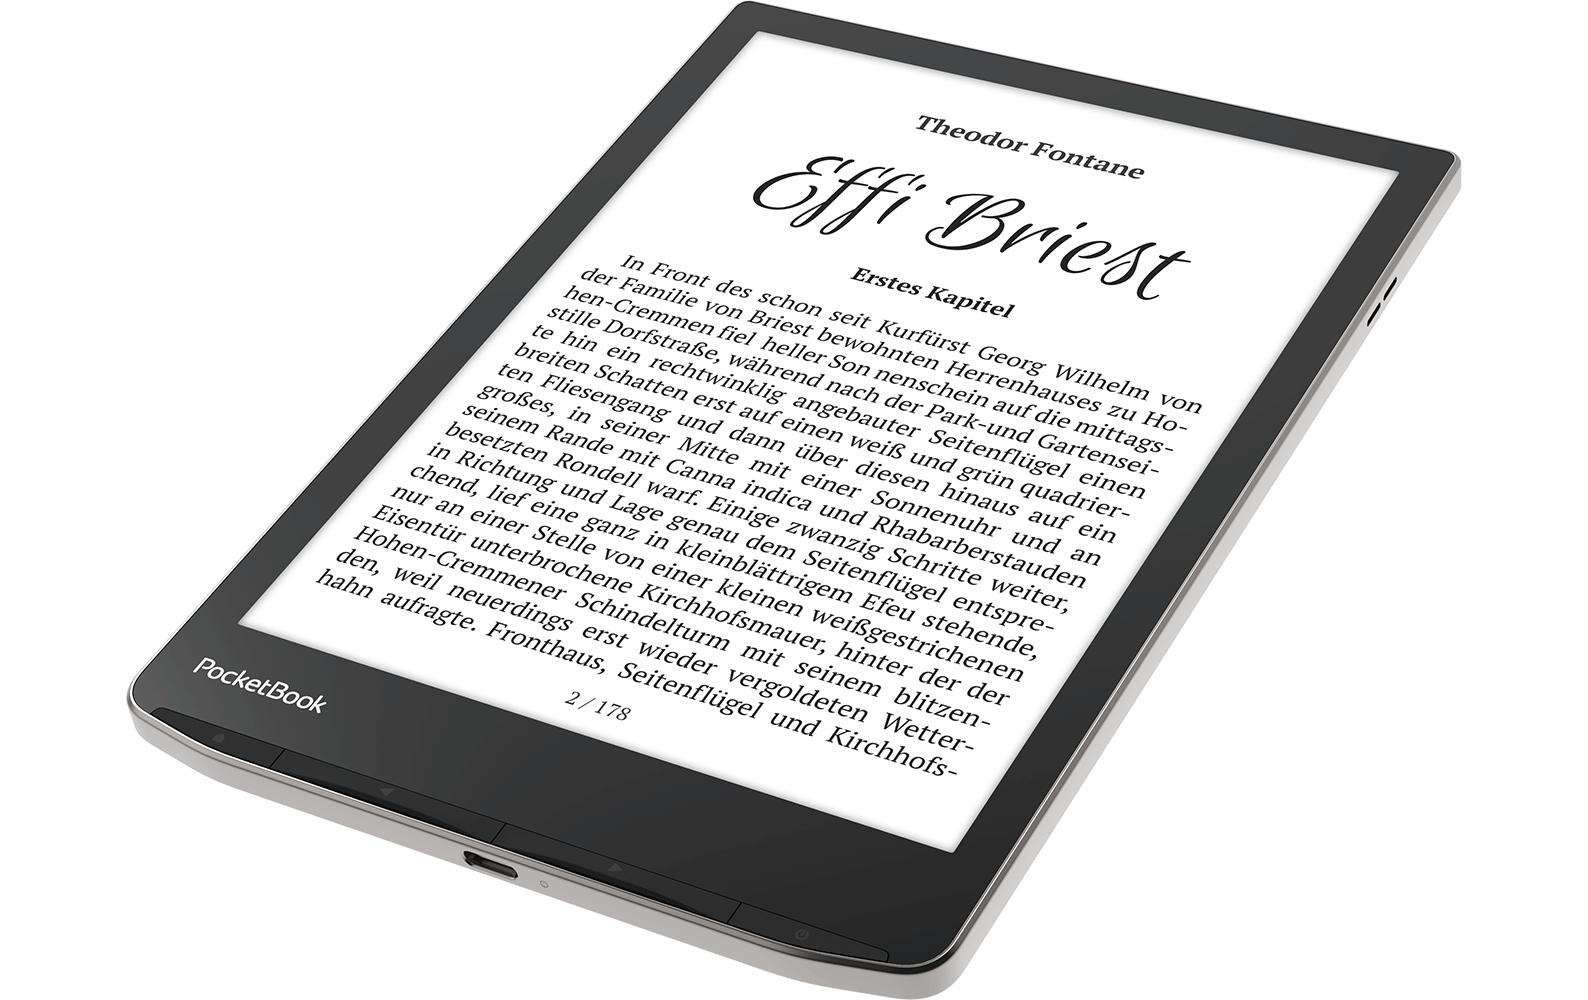 PocketBook E-Book »Reader InkPad 4 Silberfarben«